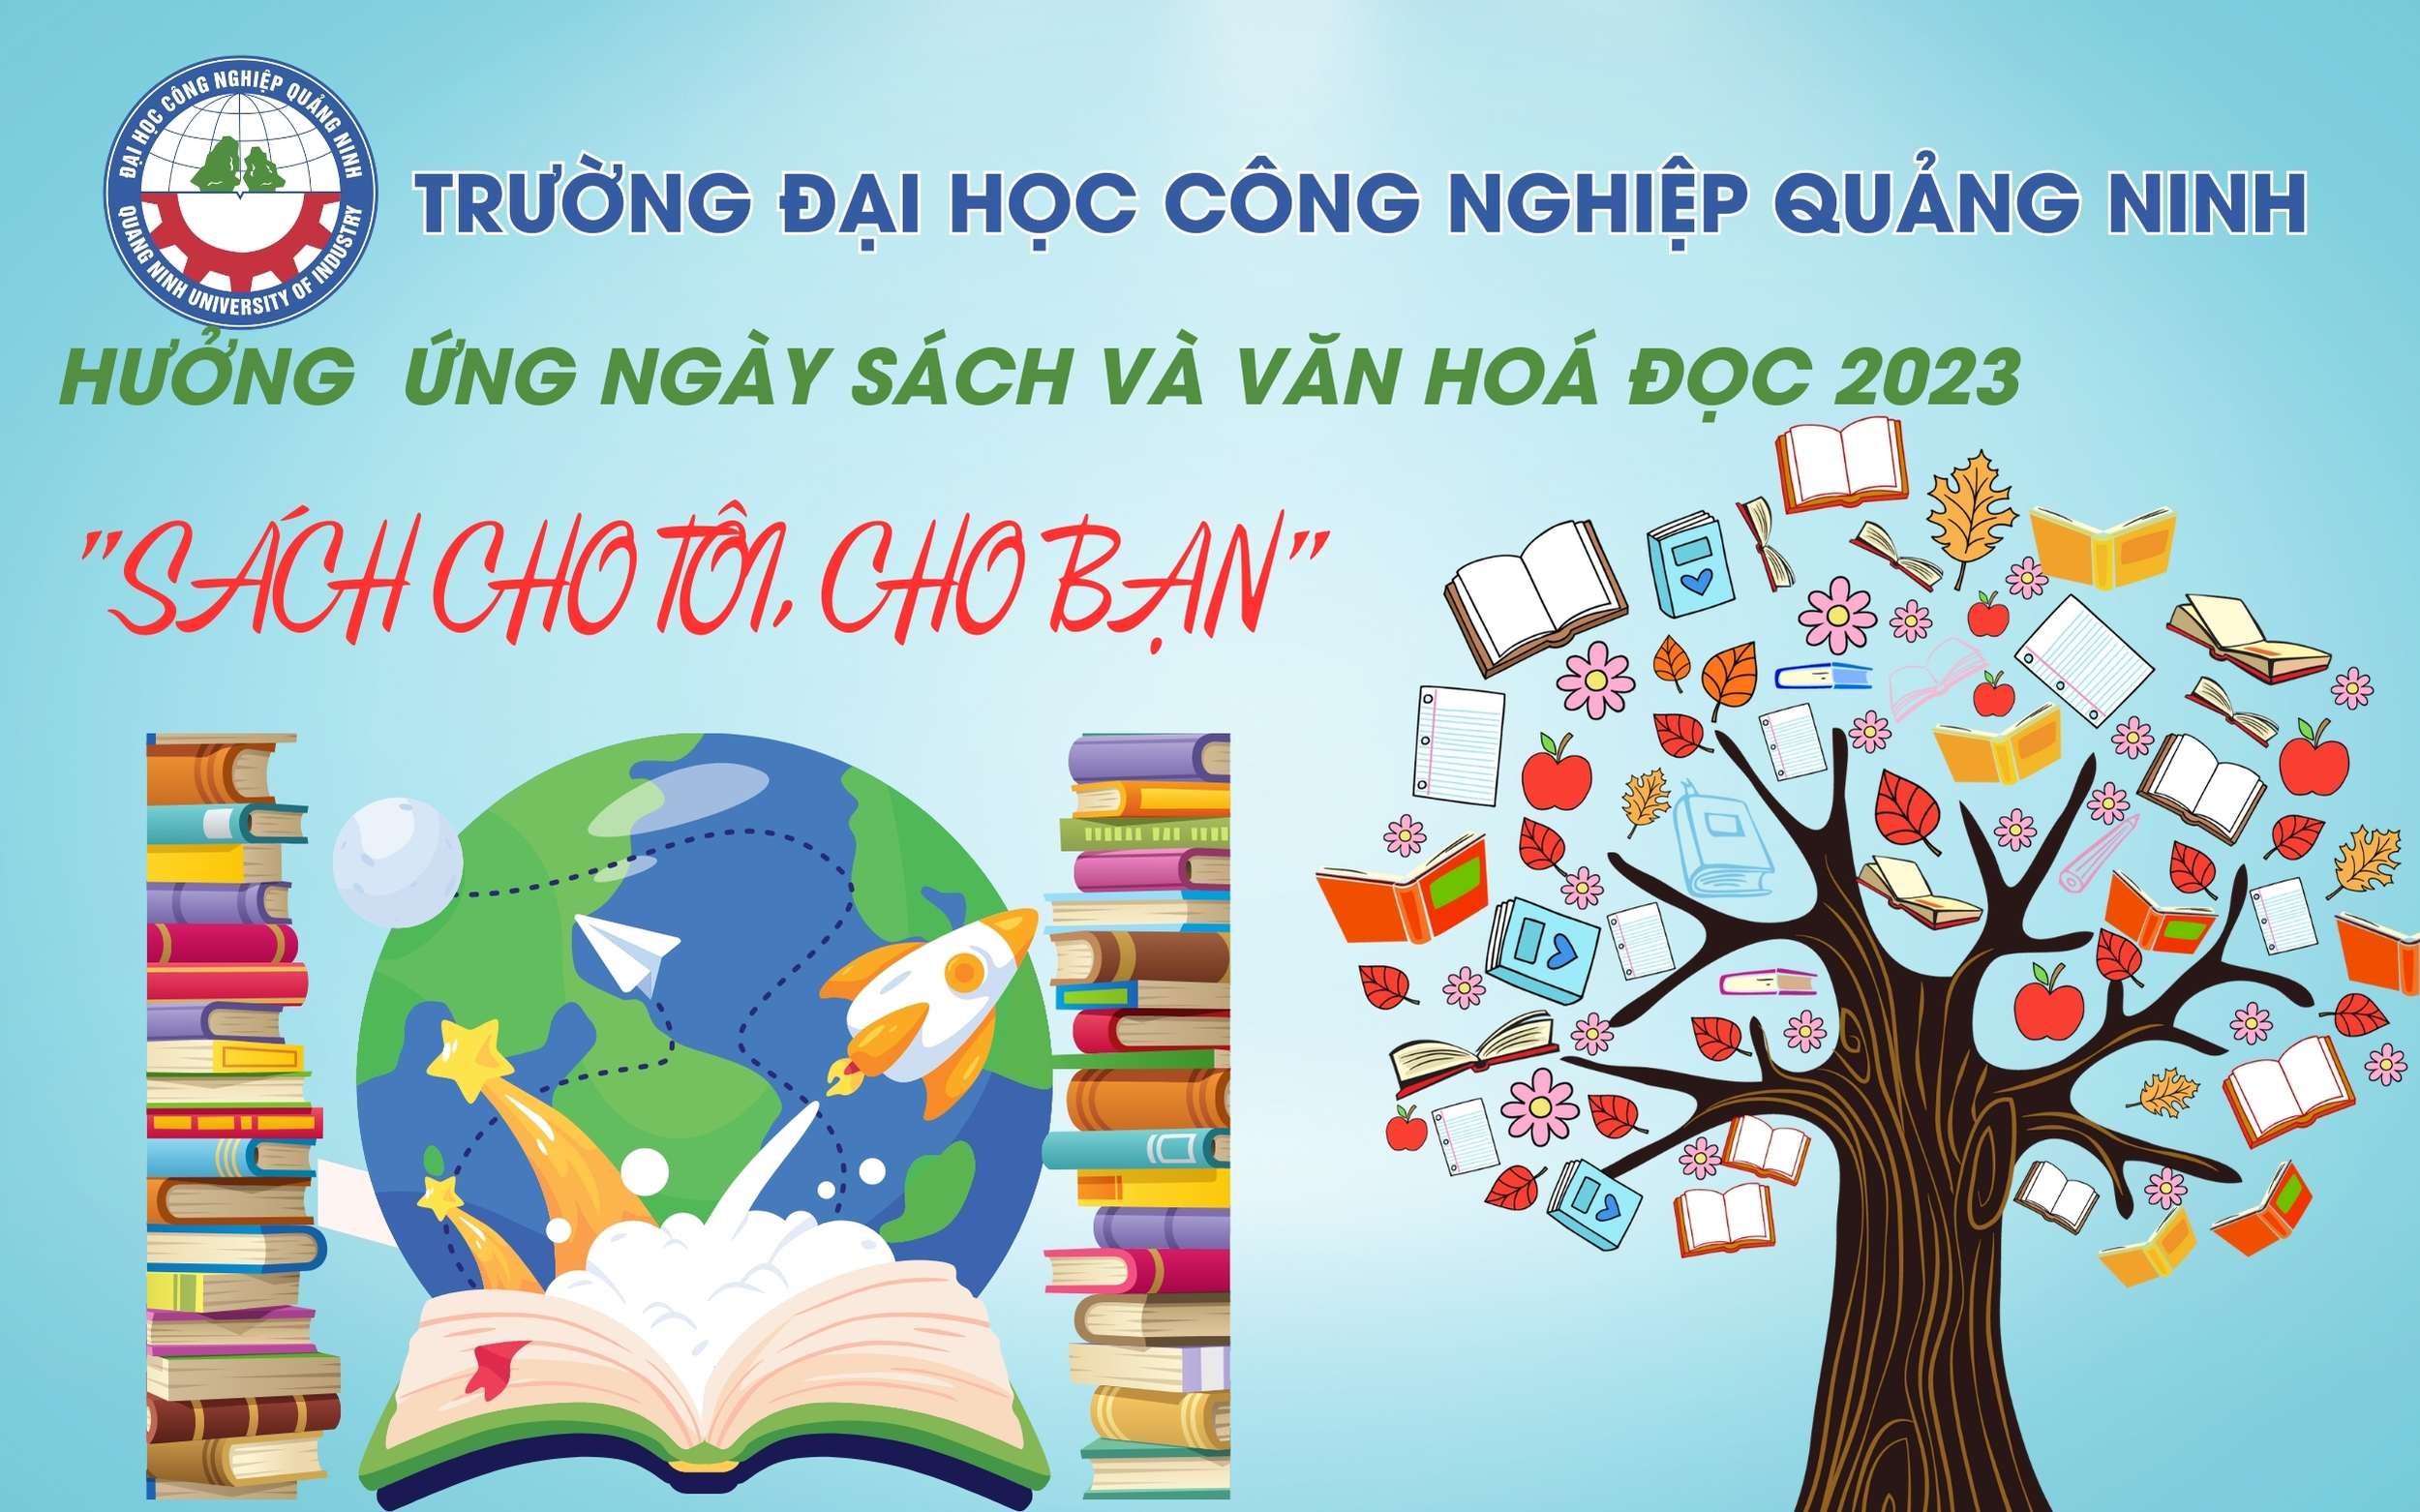 Hưởng ứng Ngày sách và Văn hoá đọc năm 2023